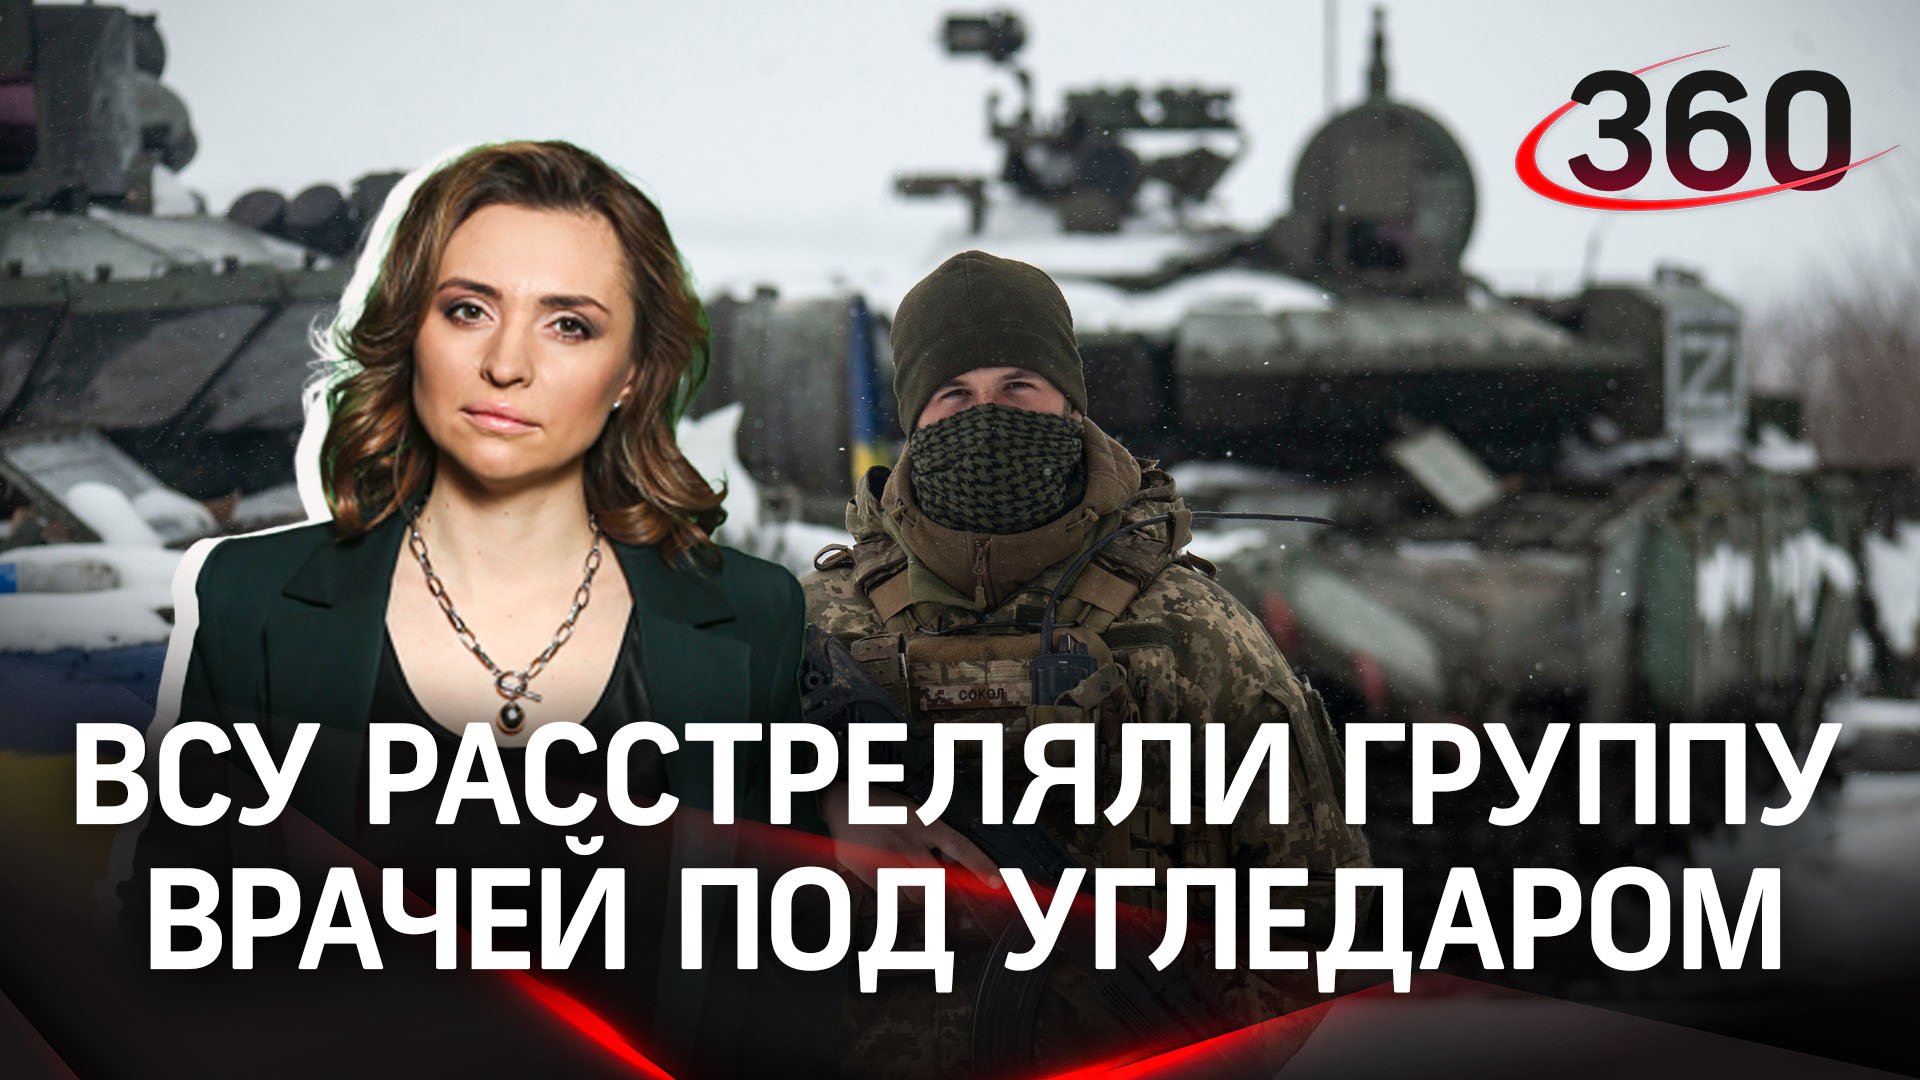 Украинские боевики расстреляли группу врачей под Угледаром | Екатерина Малашенко